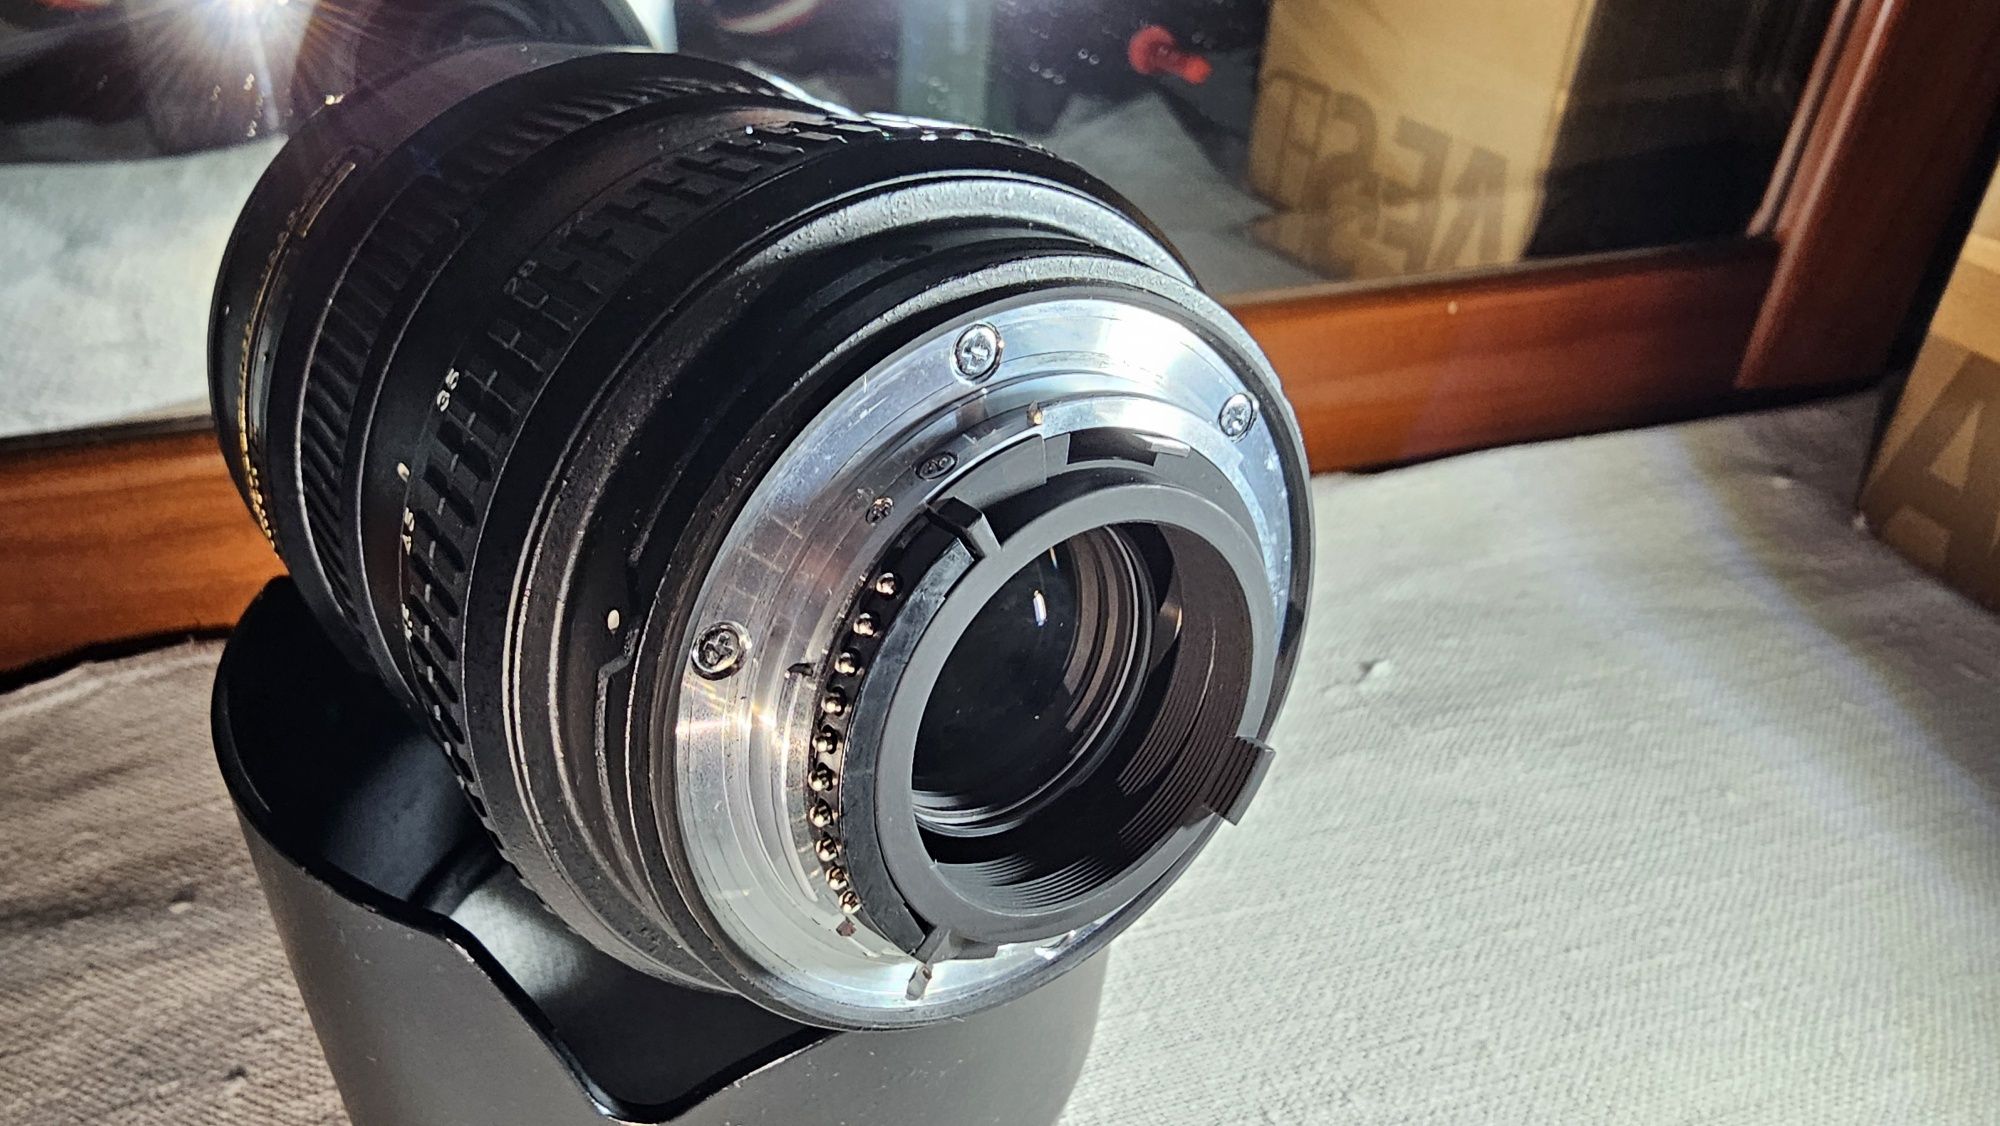 Nikon Nikkor 17-55mm f/2.8G AF-S DX IF ED